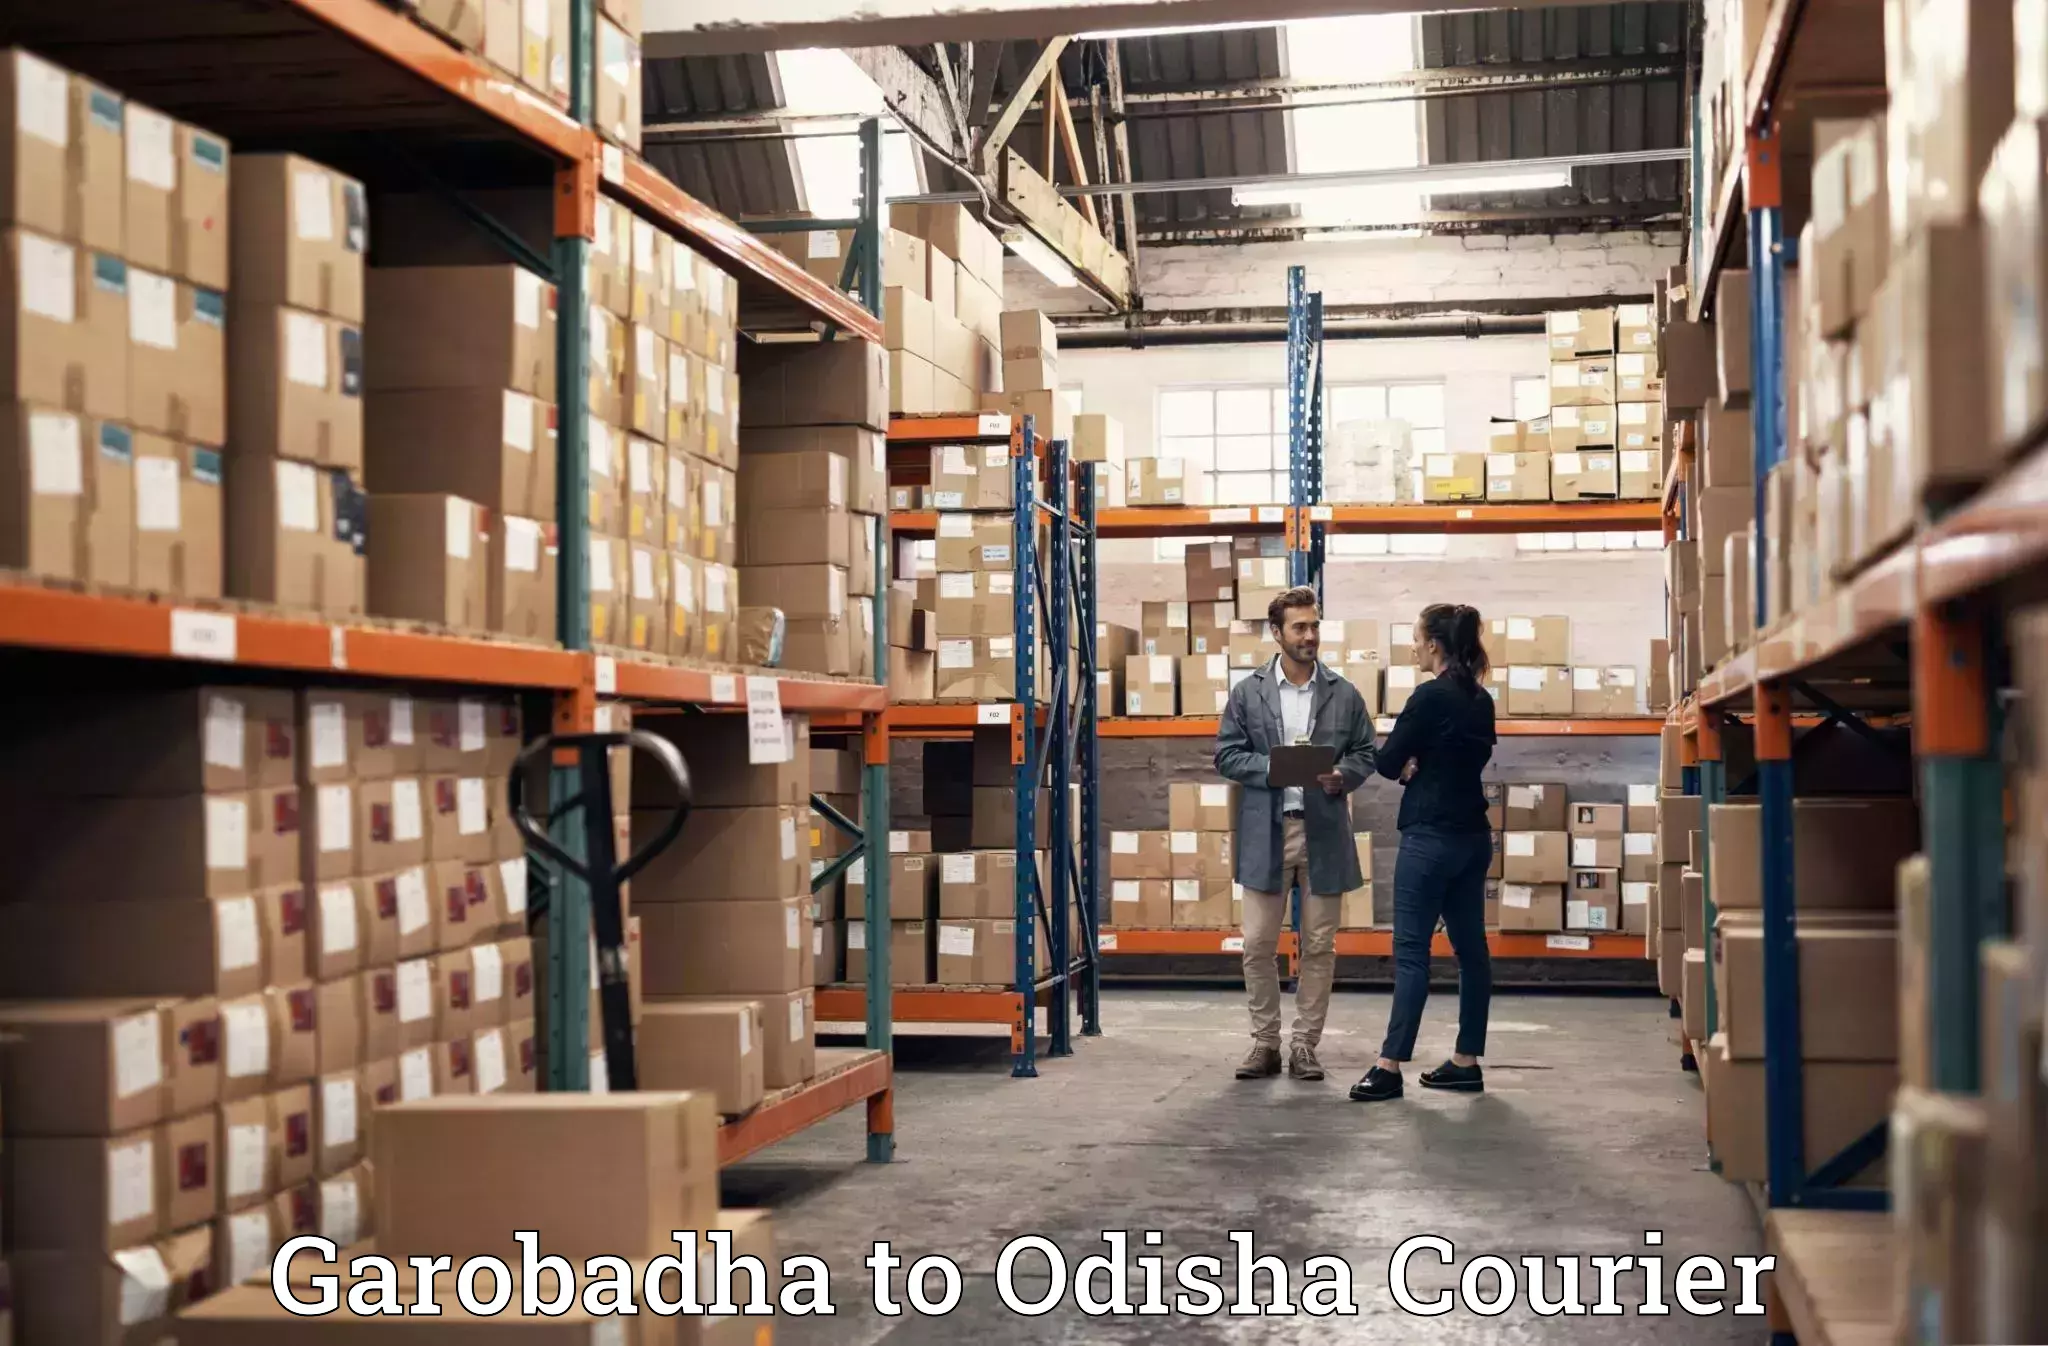 Quality moving services Garobadha to Muniguda